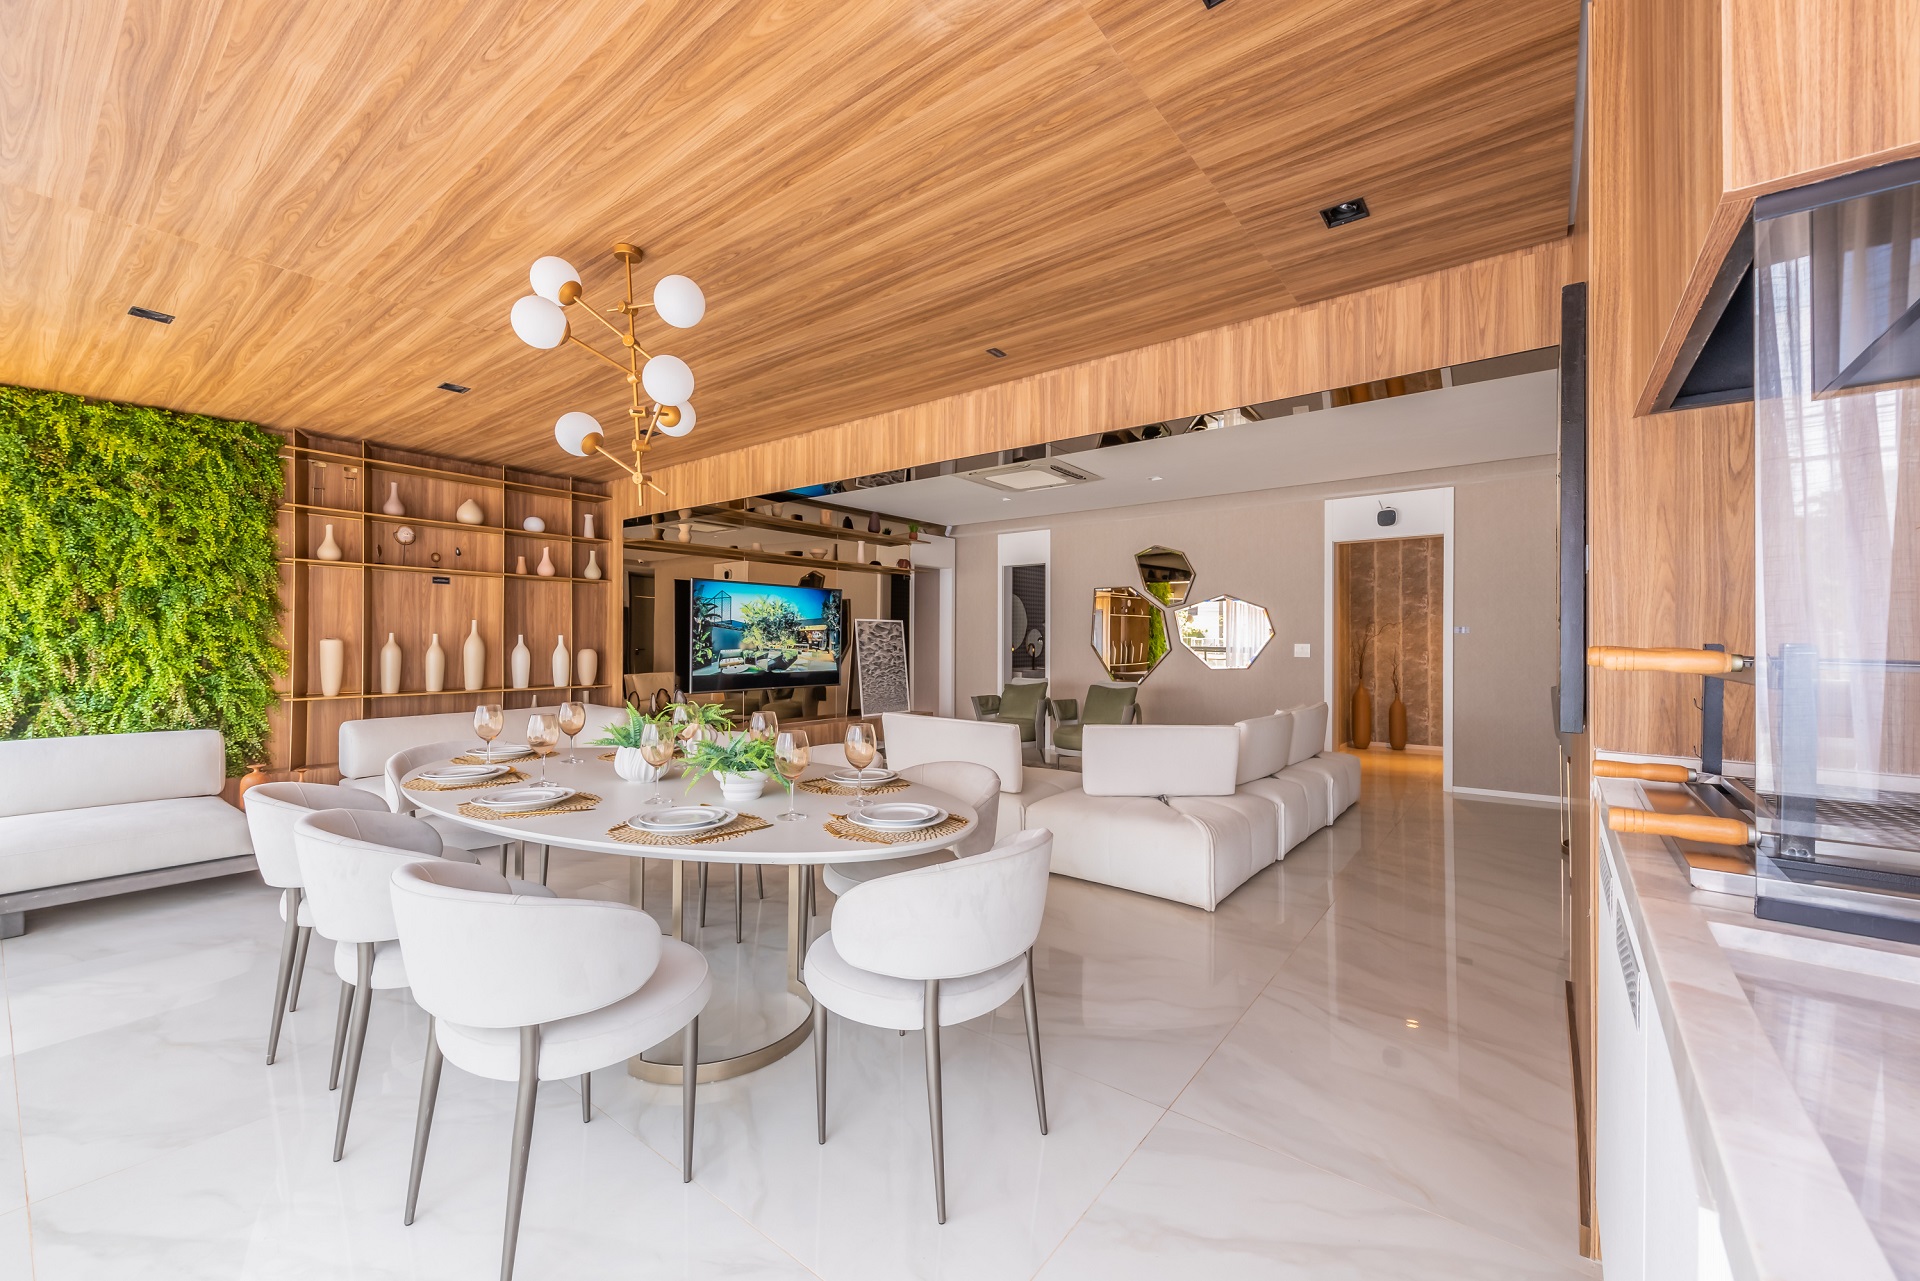 Sala integrada com piso de mármore, móveis claros, jardim vertical e teto de madeira